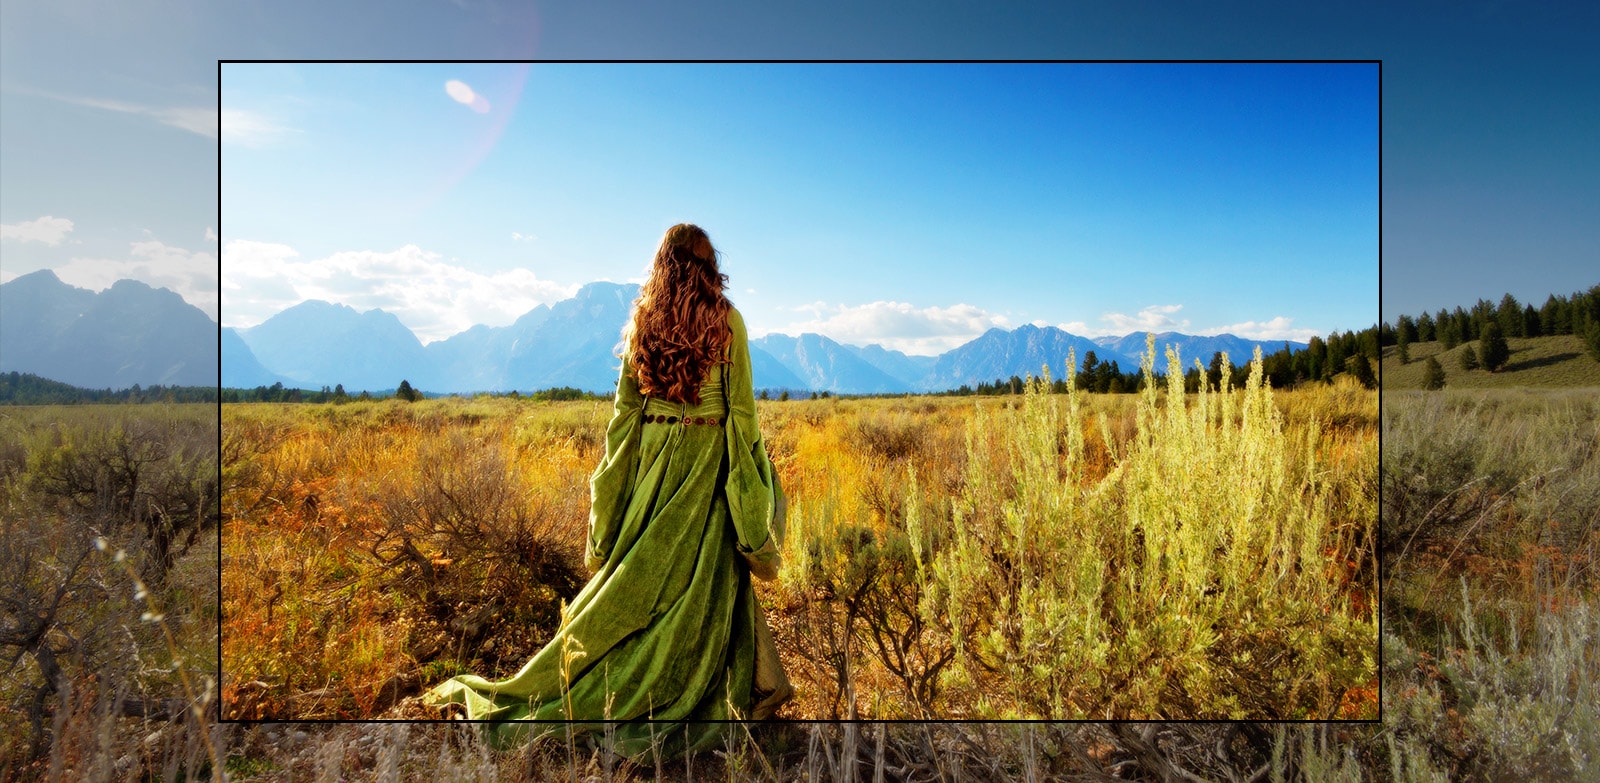 TV zaslon koji prikazuje scenu iz fantastičnog filma u kojem žena stoji u polju i gleda planine.